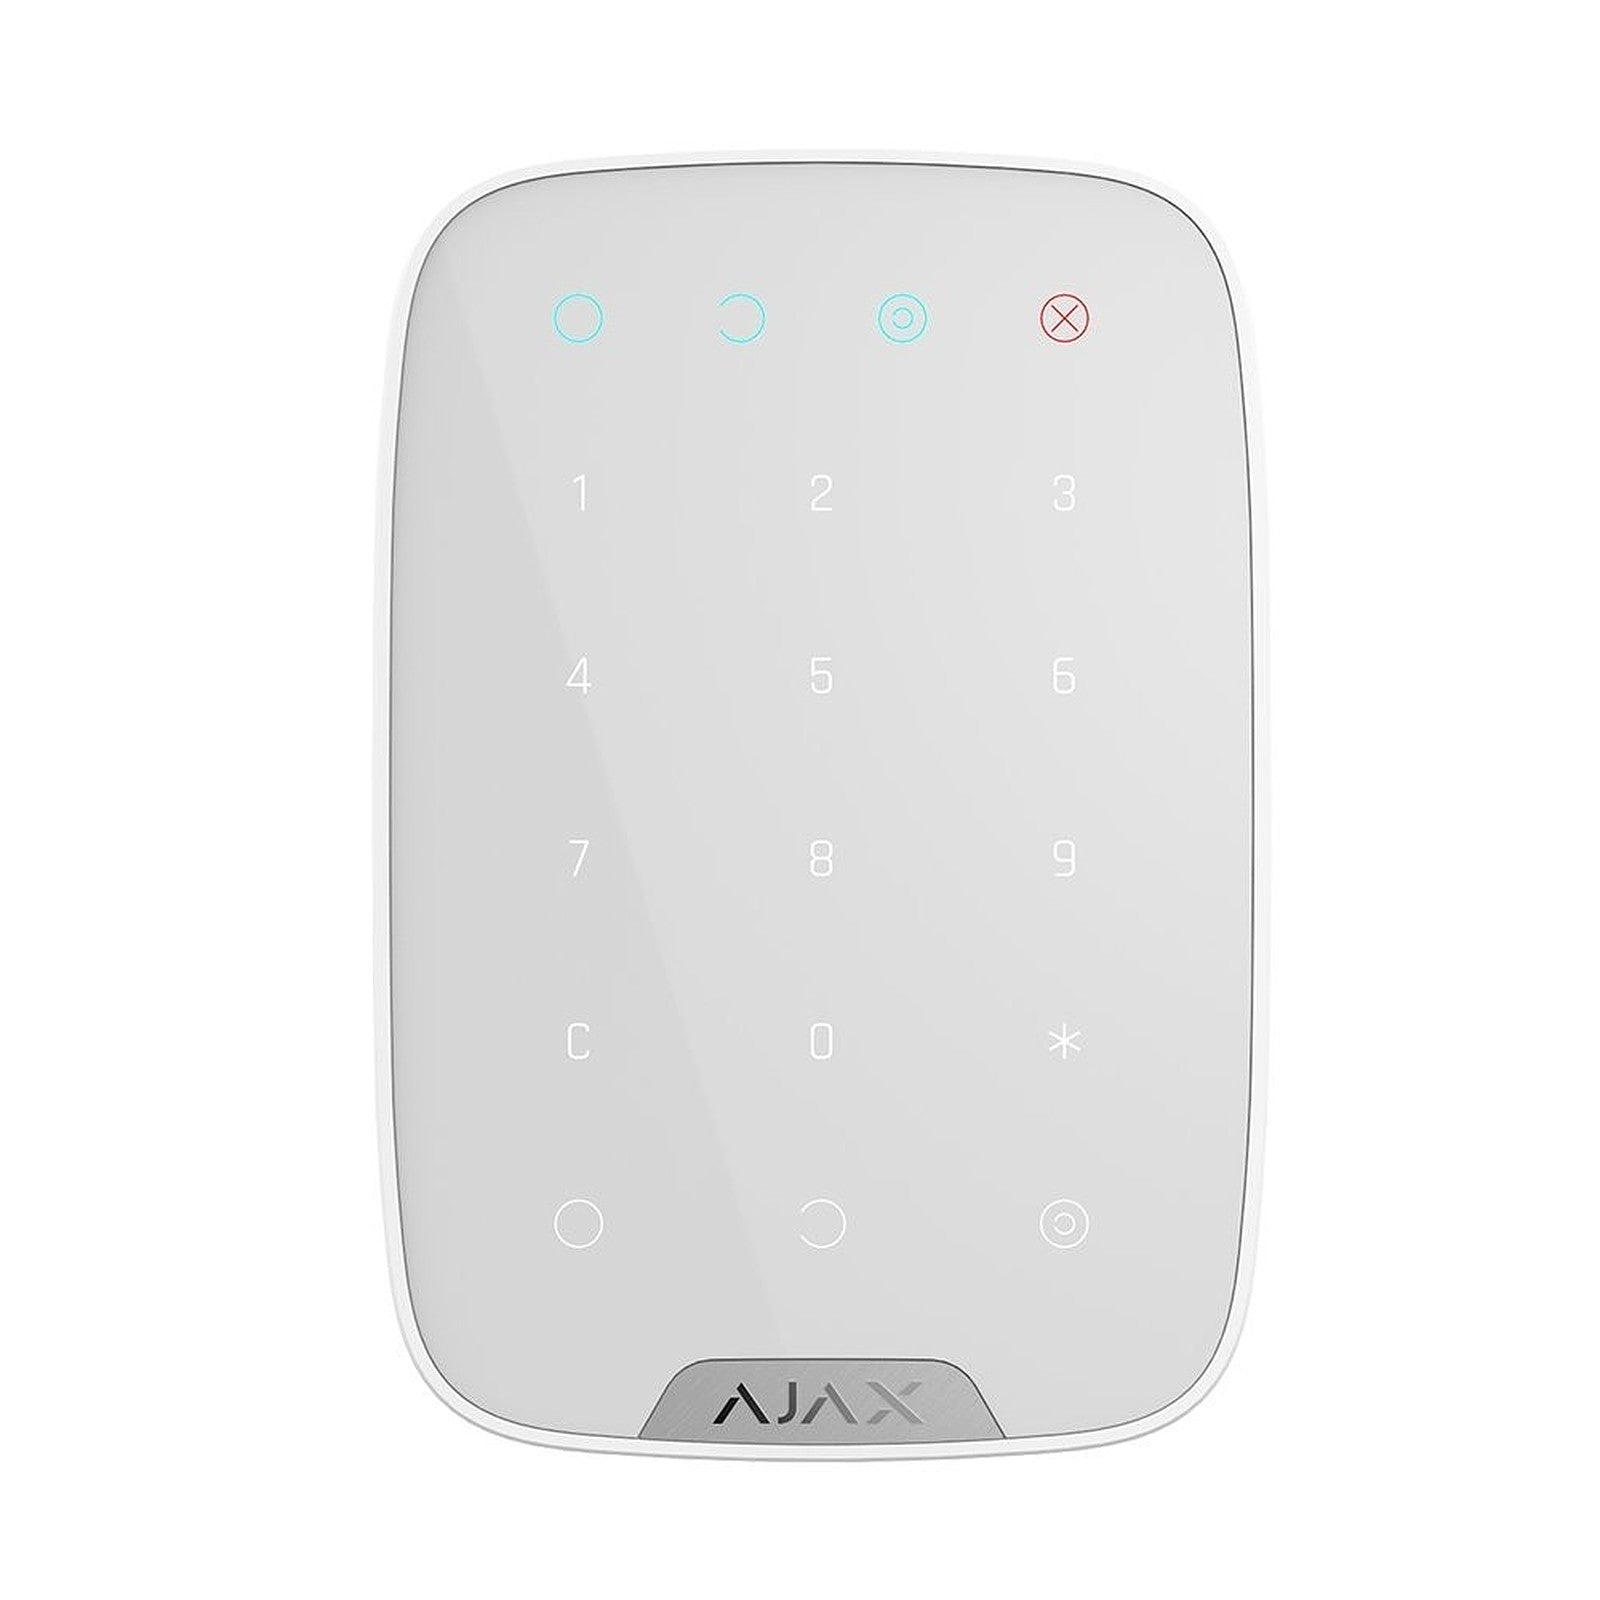 AJAX Clavier sans fil pour système de sécurité - KeyPad